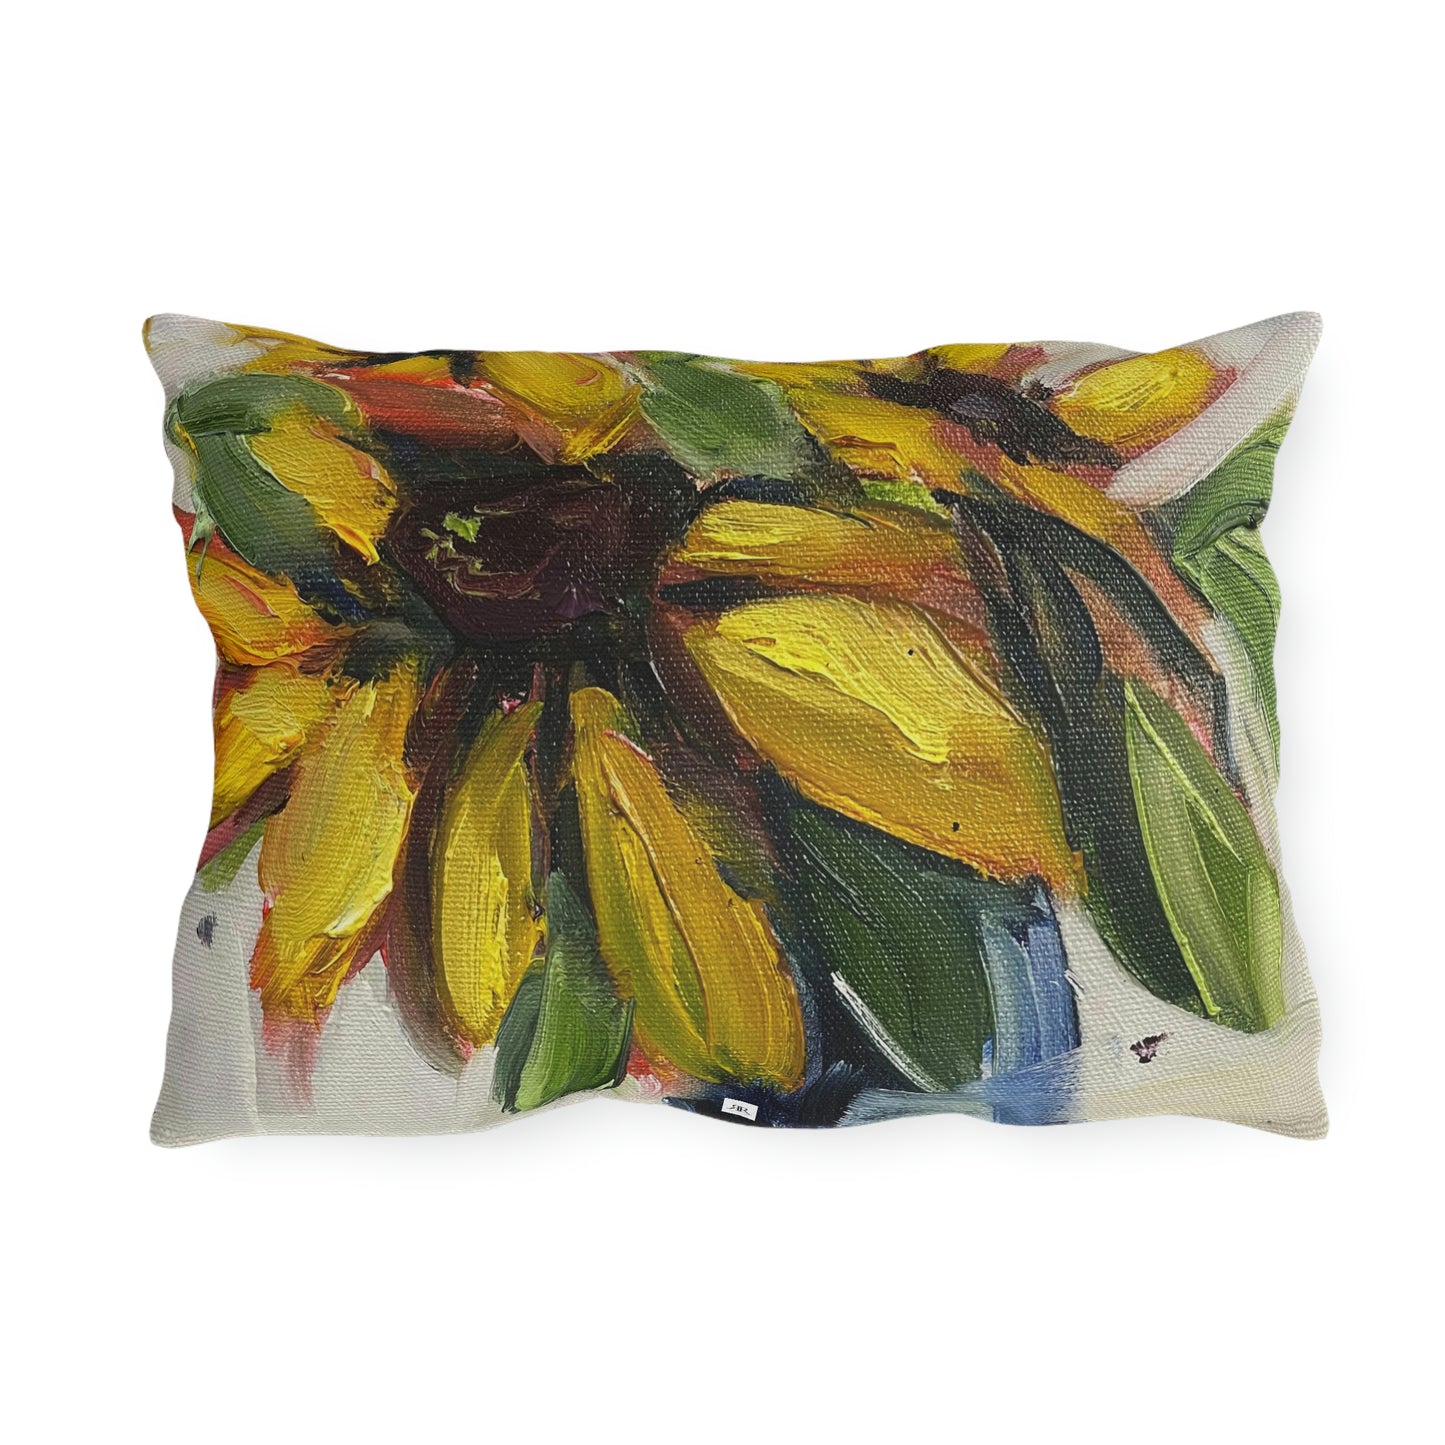 Fluffy Sunflowers Outdoor Pillows